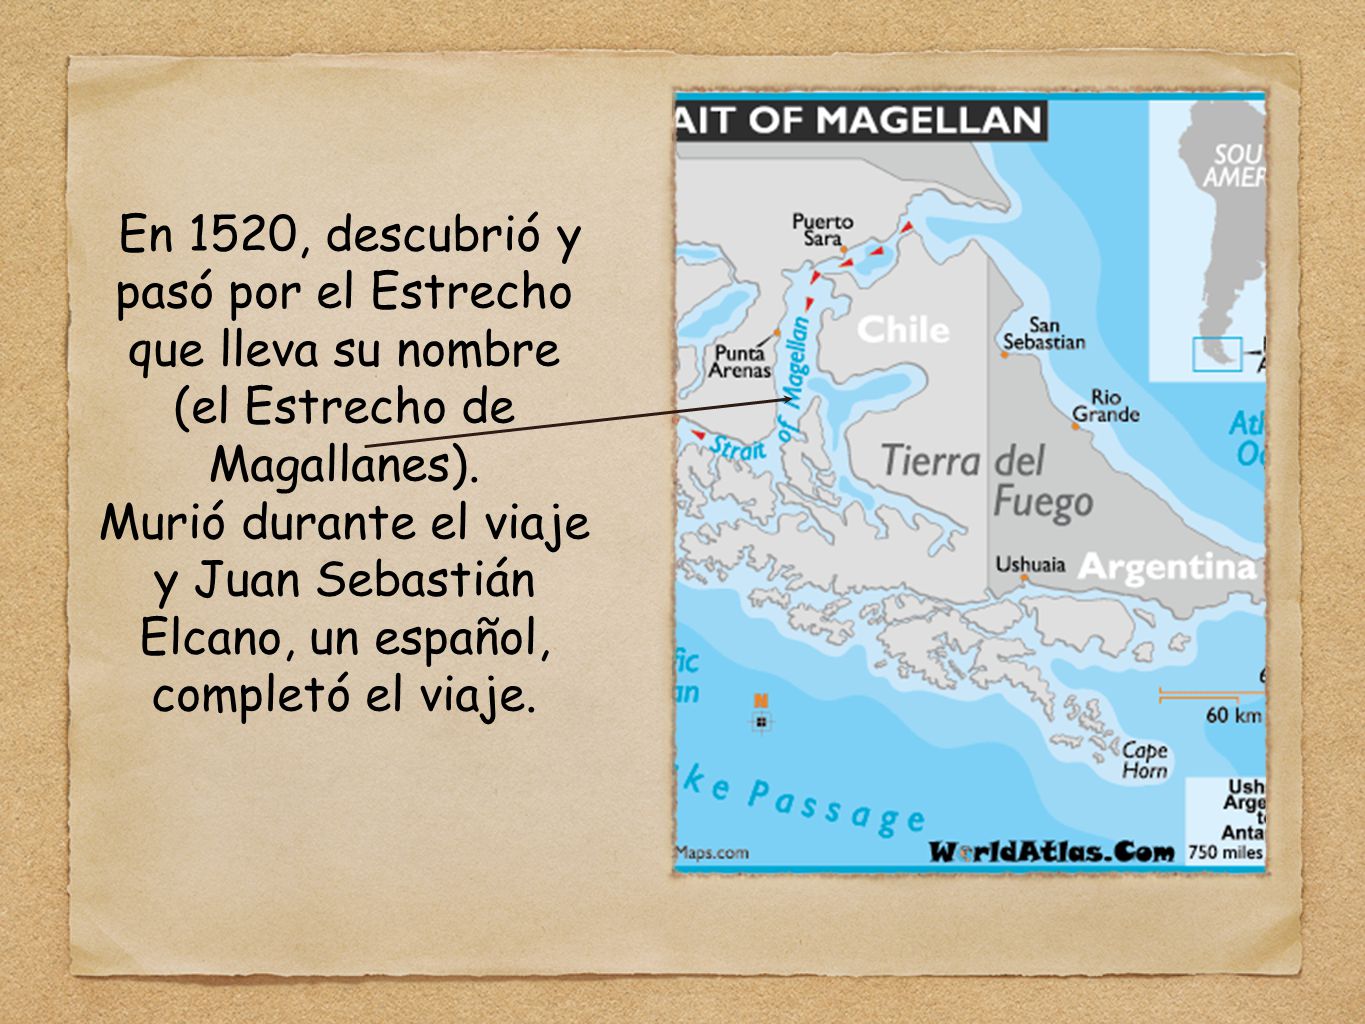 En 1520, descubrió y pasó por el Estrecho que lleva su nombre (el Estrecho de Magallanes).